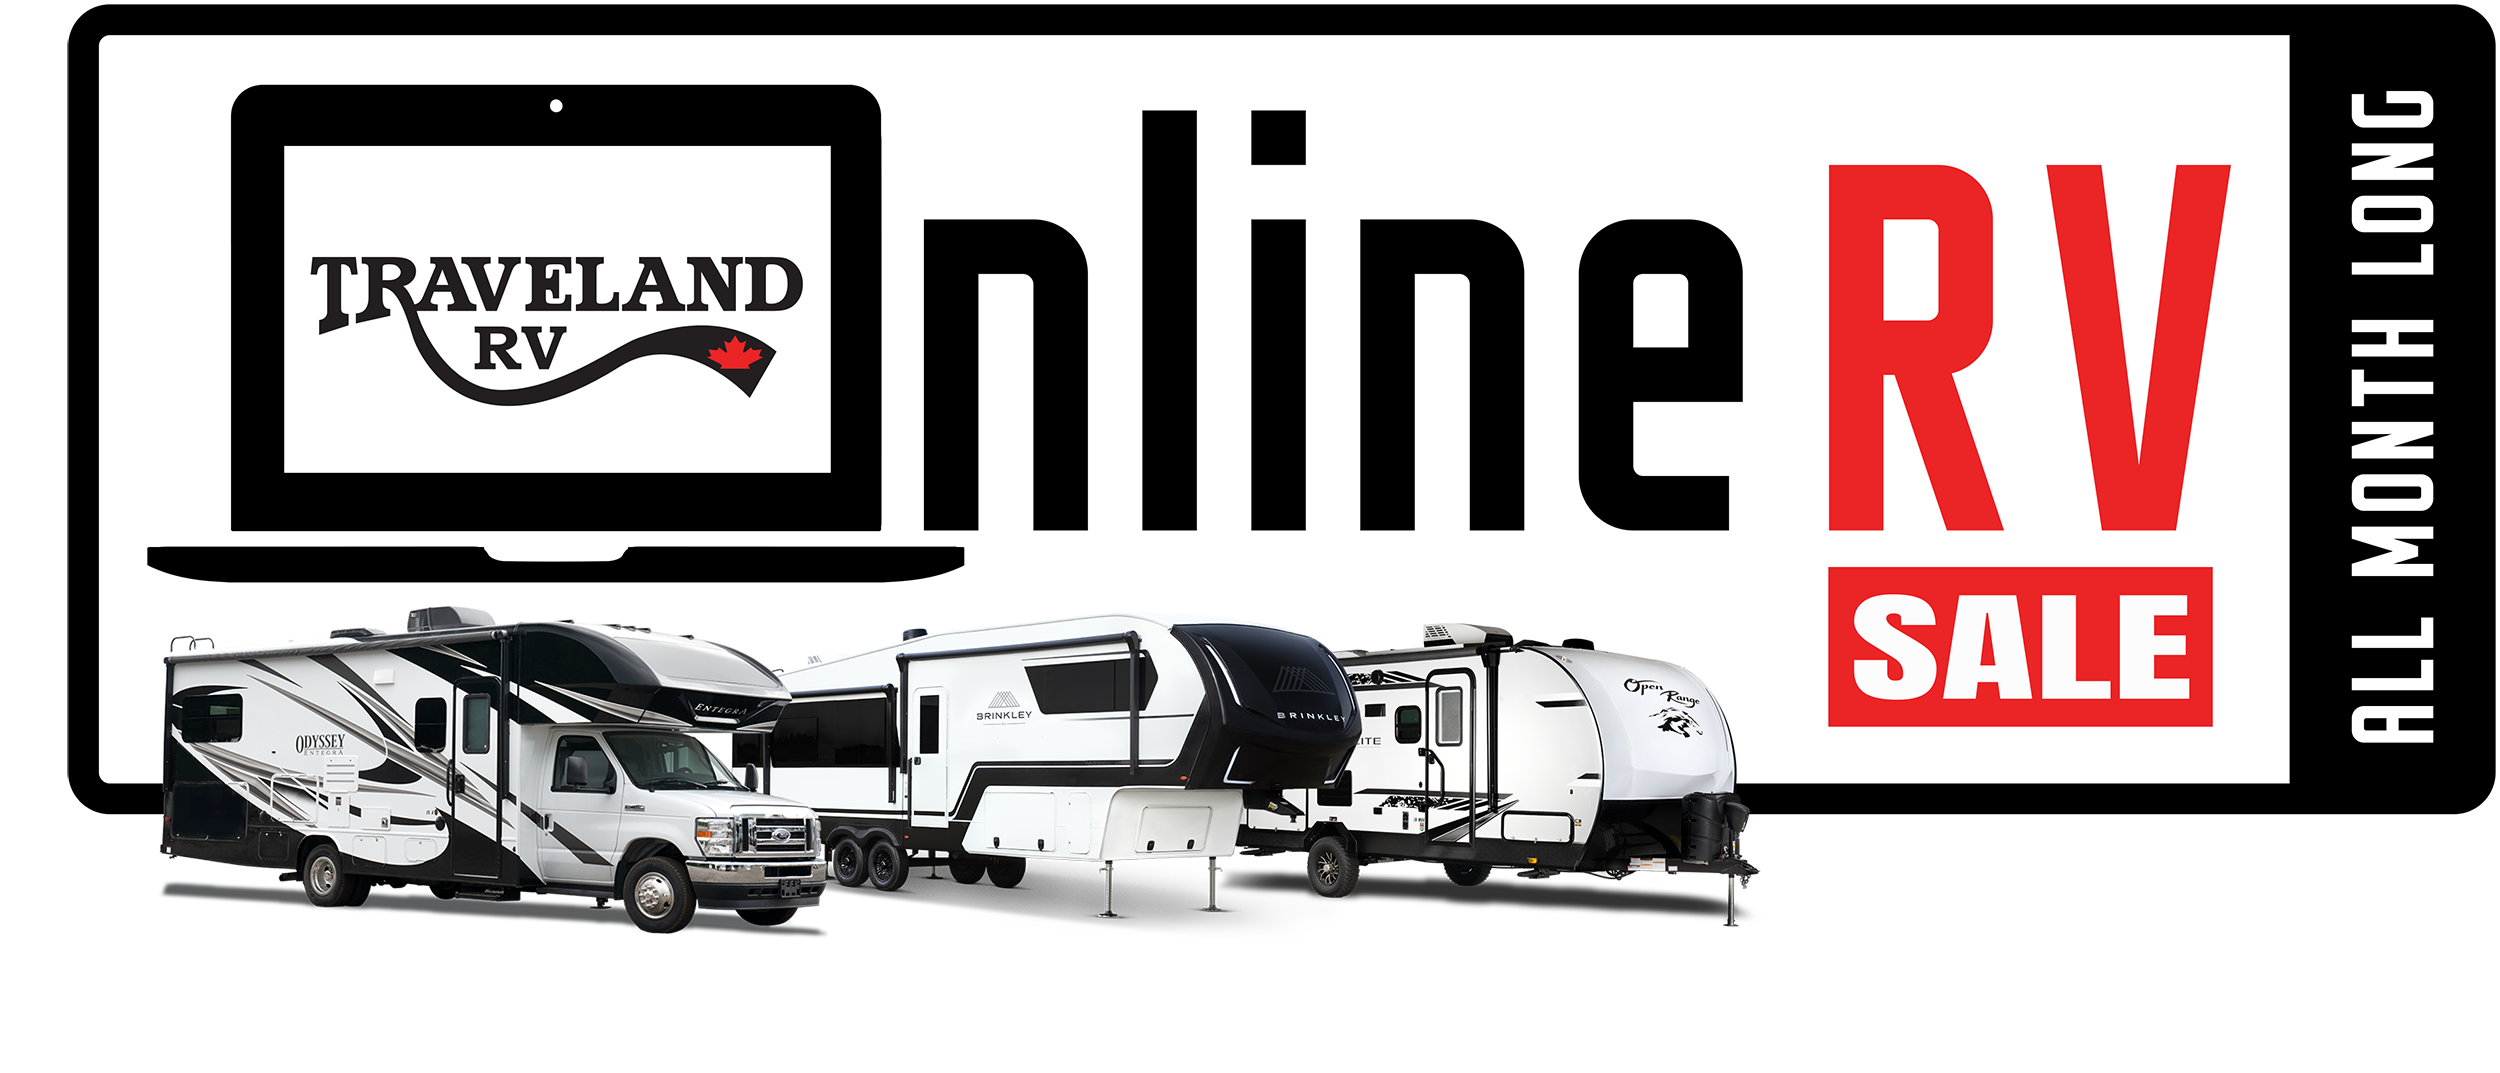 Traveland RV Online RV Sale